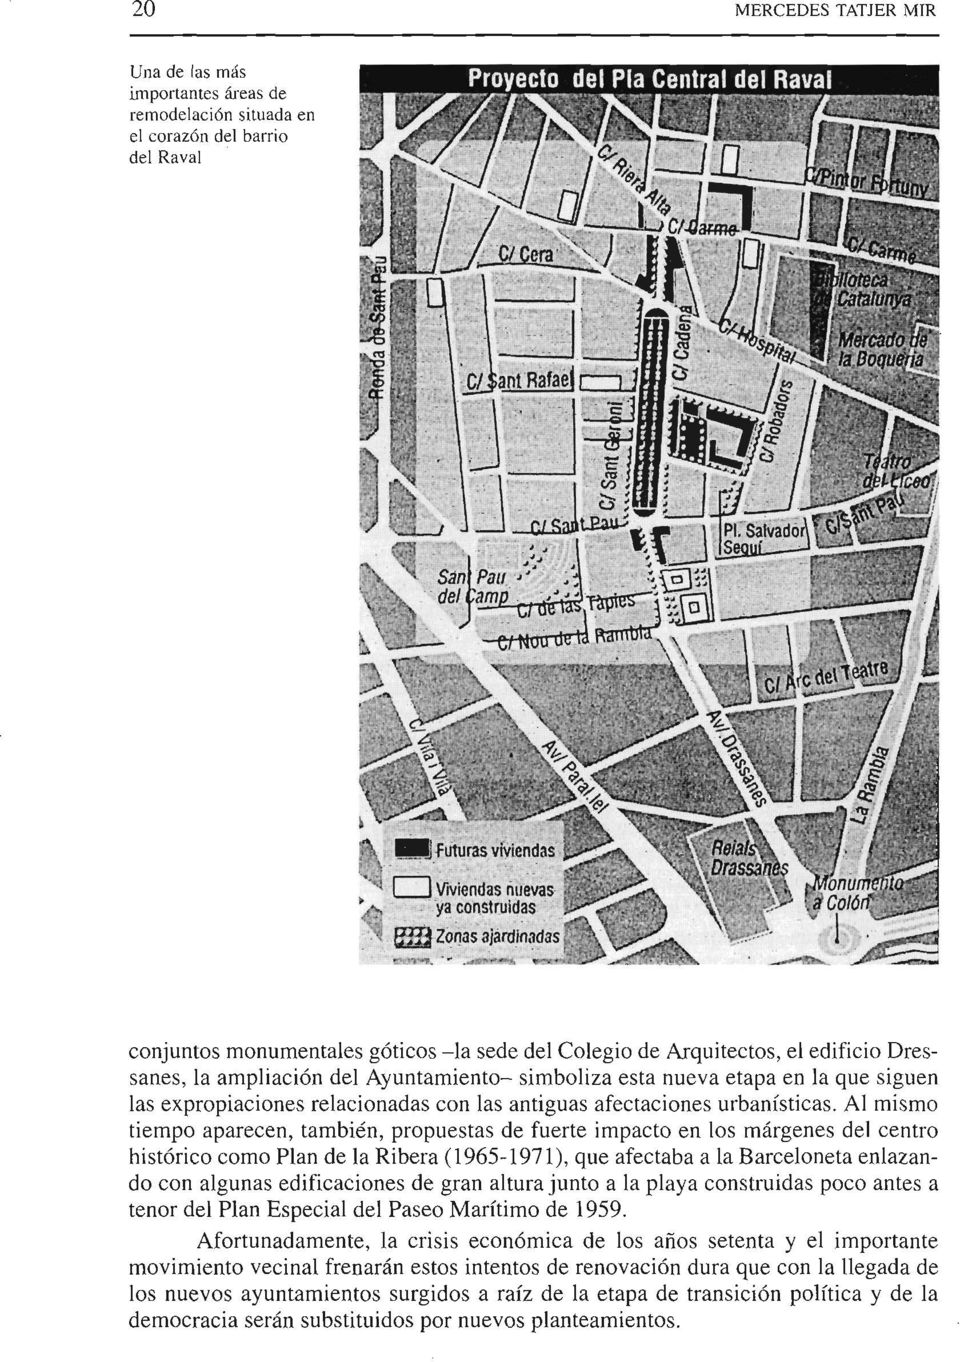 Al mismo tiempo aparecen, también, propuestas de fuerte impacto en los márgenes del centro histórico como Plan de la Ribera (1965-1971), que afectaba a la Barceloneta enlazando con algunas